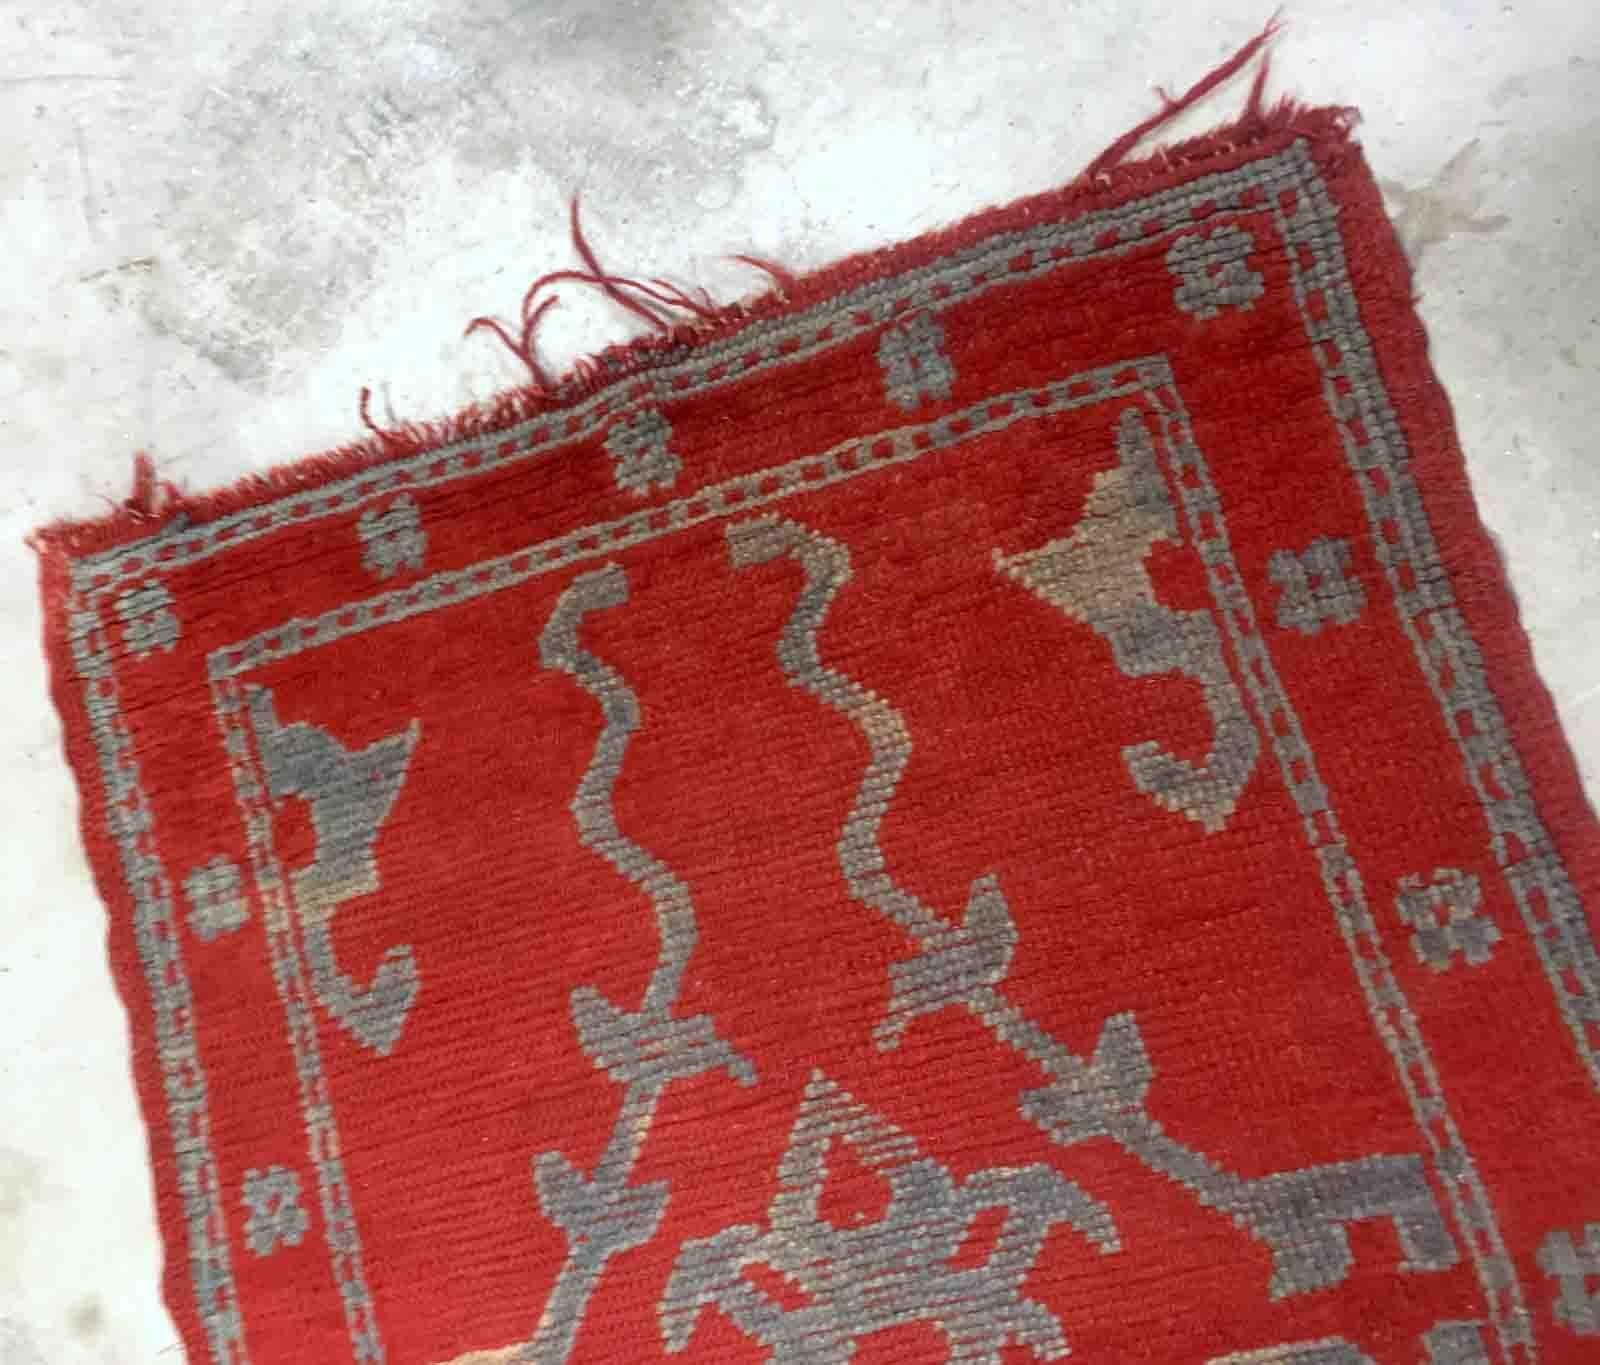 Handgefertigter antiker türkischer roter Teppich aus der Region Oushak. Der Teppich stammt aus dem Ende des 19. Jahrhunderts und ist im Originalzustand, er hat einige Altersspuren.

-zustand: original, einige Altersspuren,

-ca. 1880er